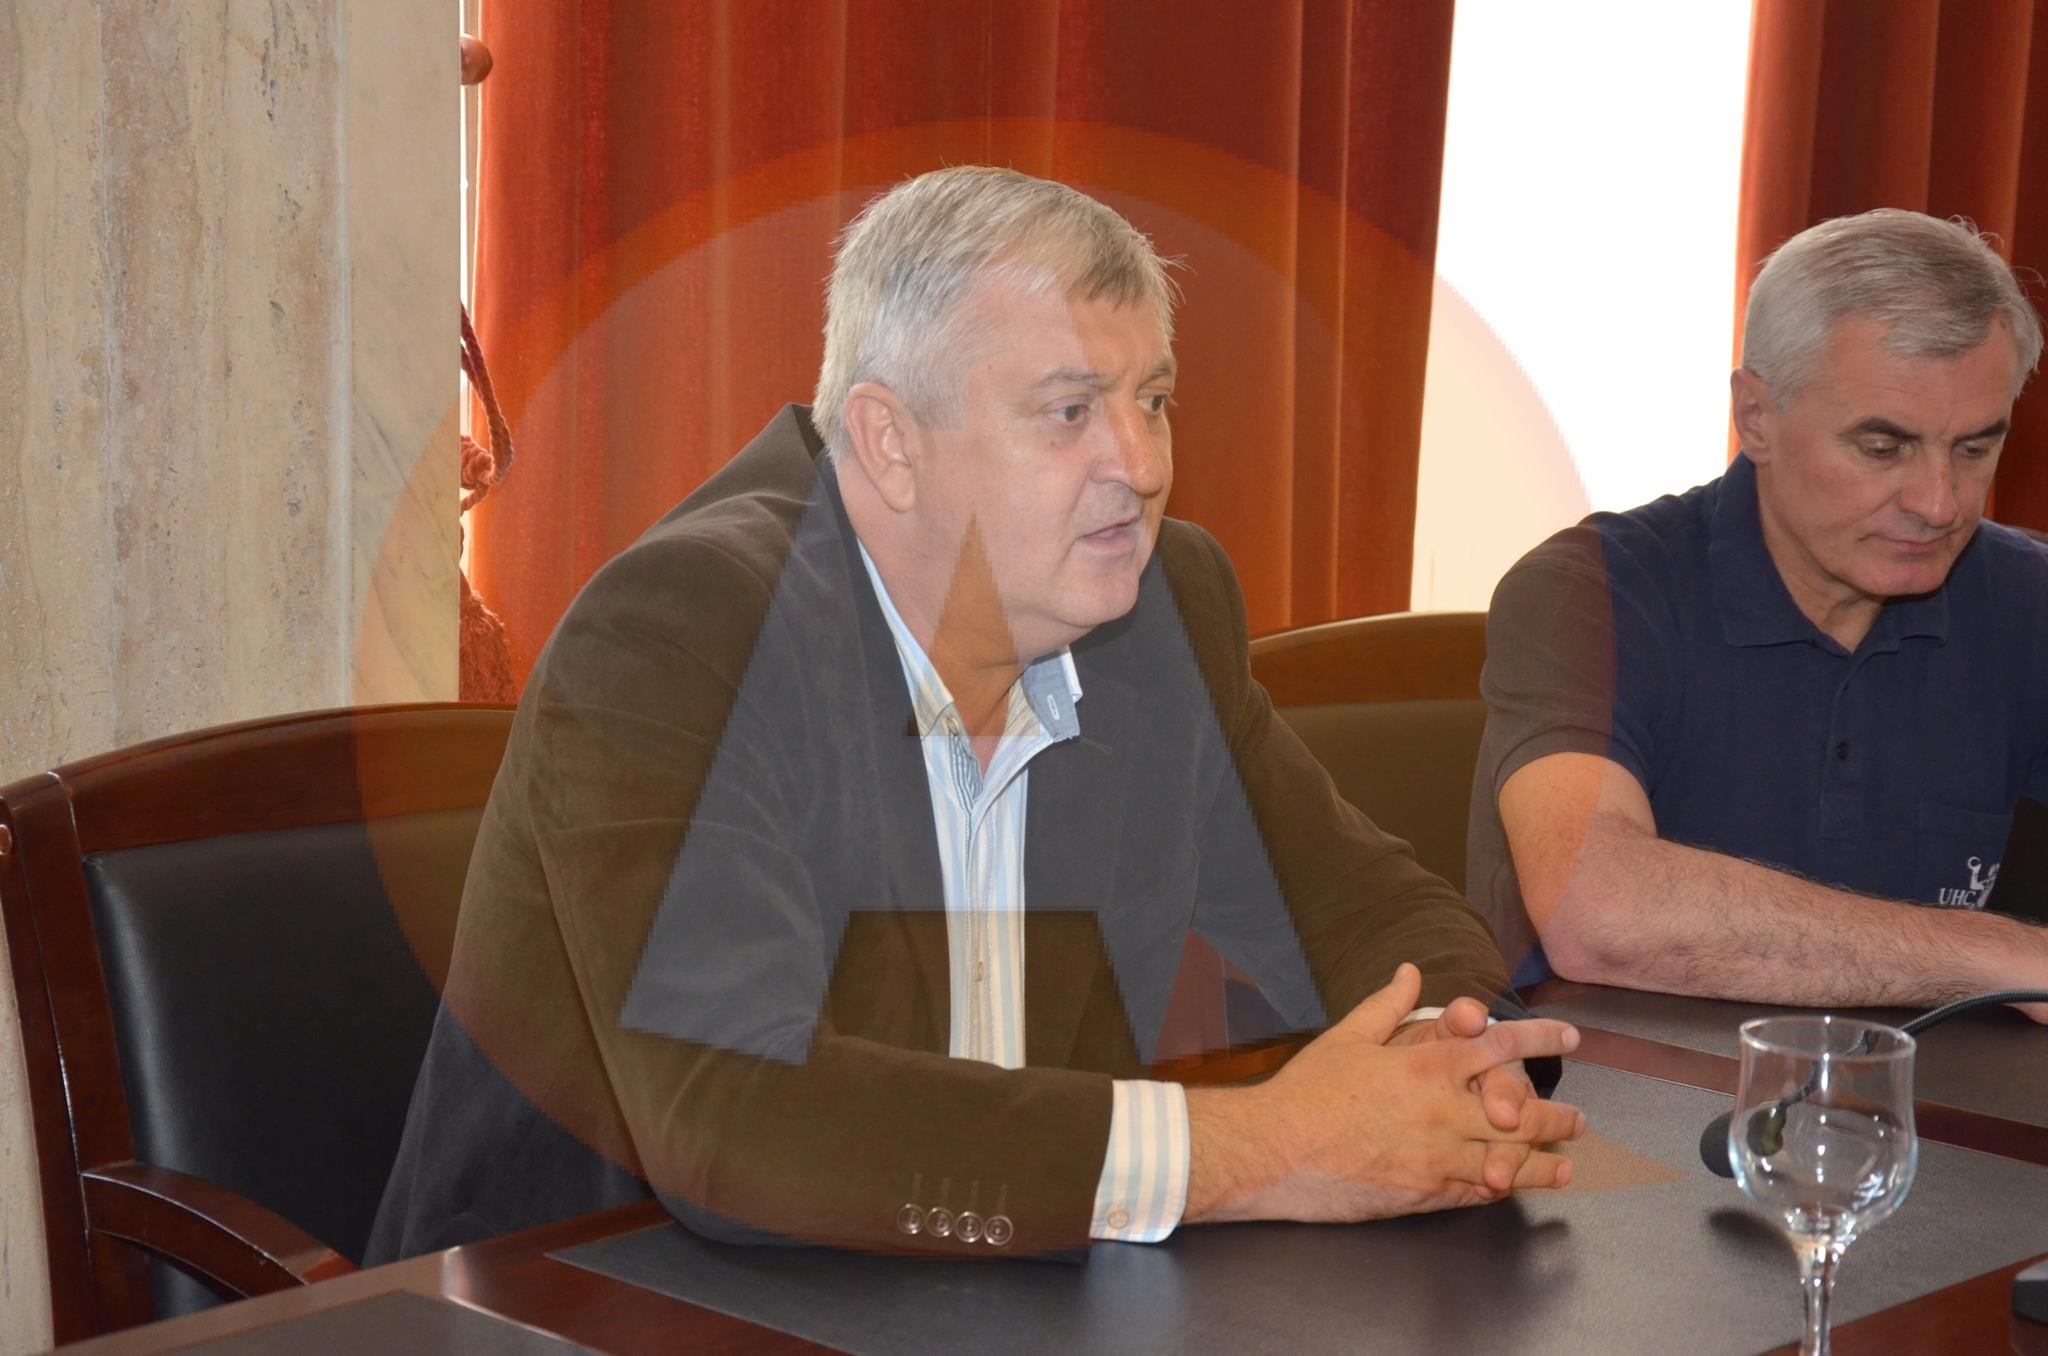 La jumătate de mandat, primarul Drăgulin anunță proiecte importante în derulare